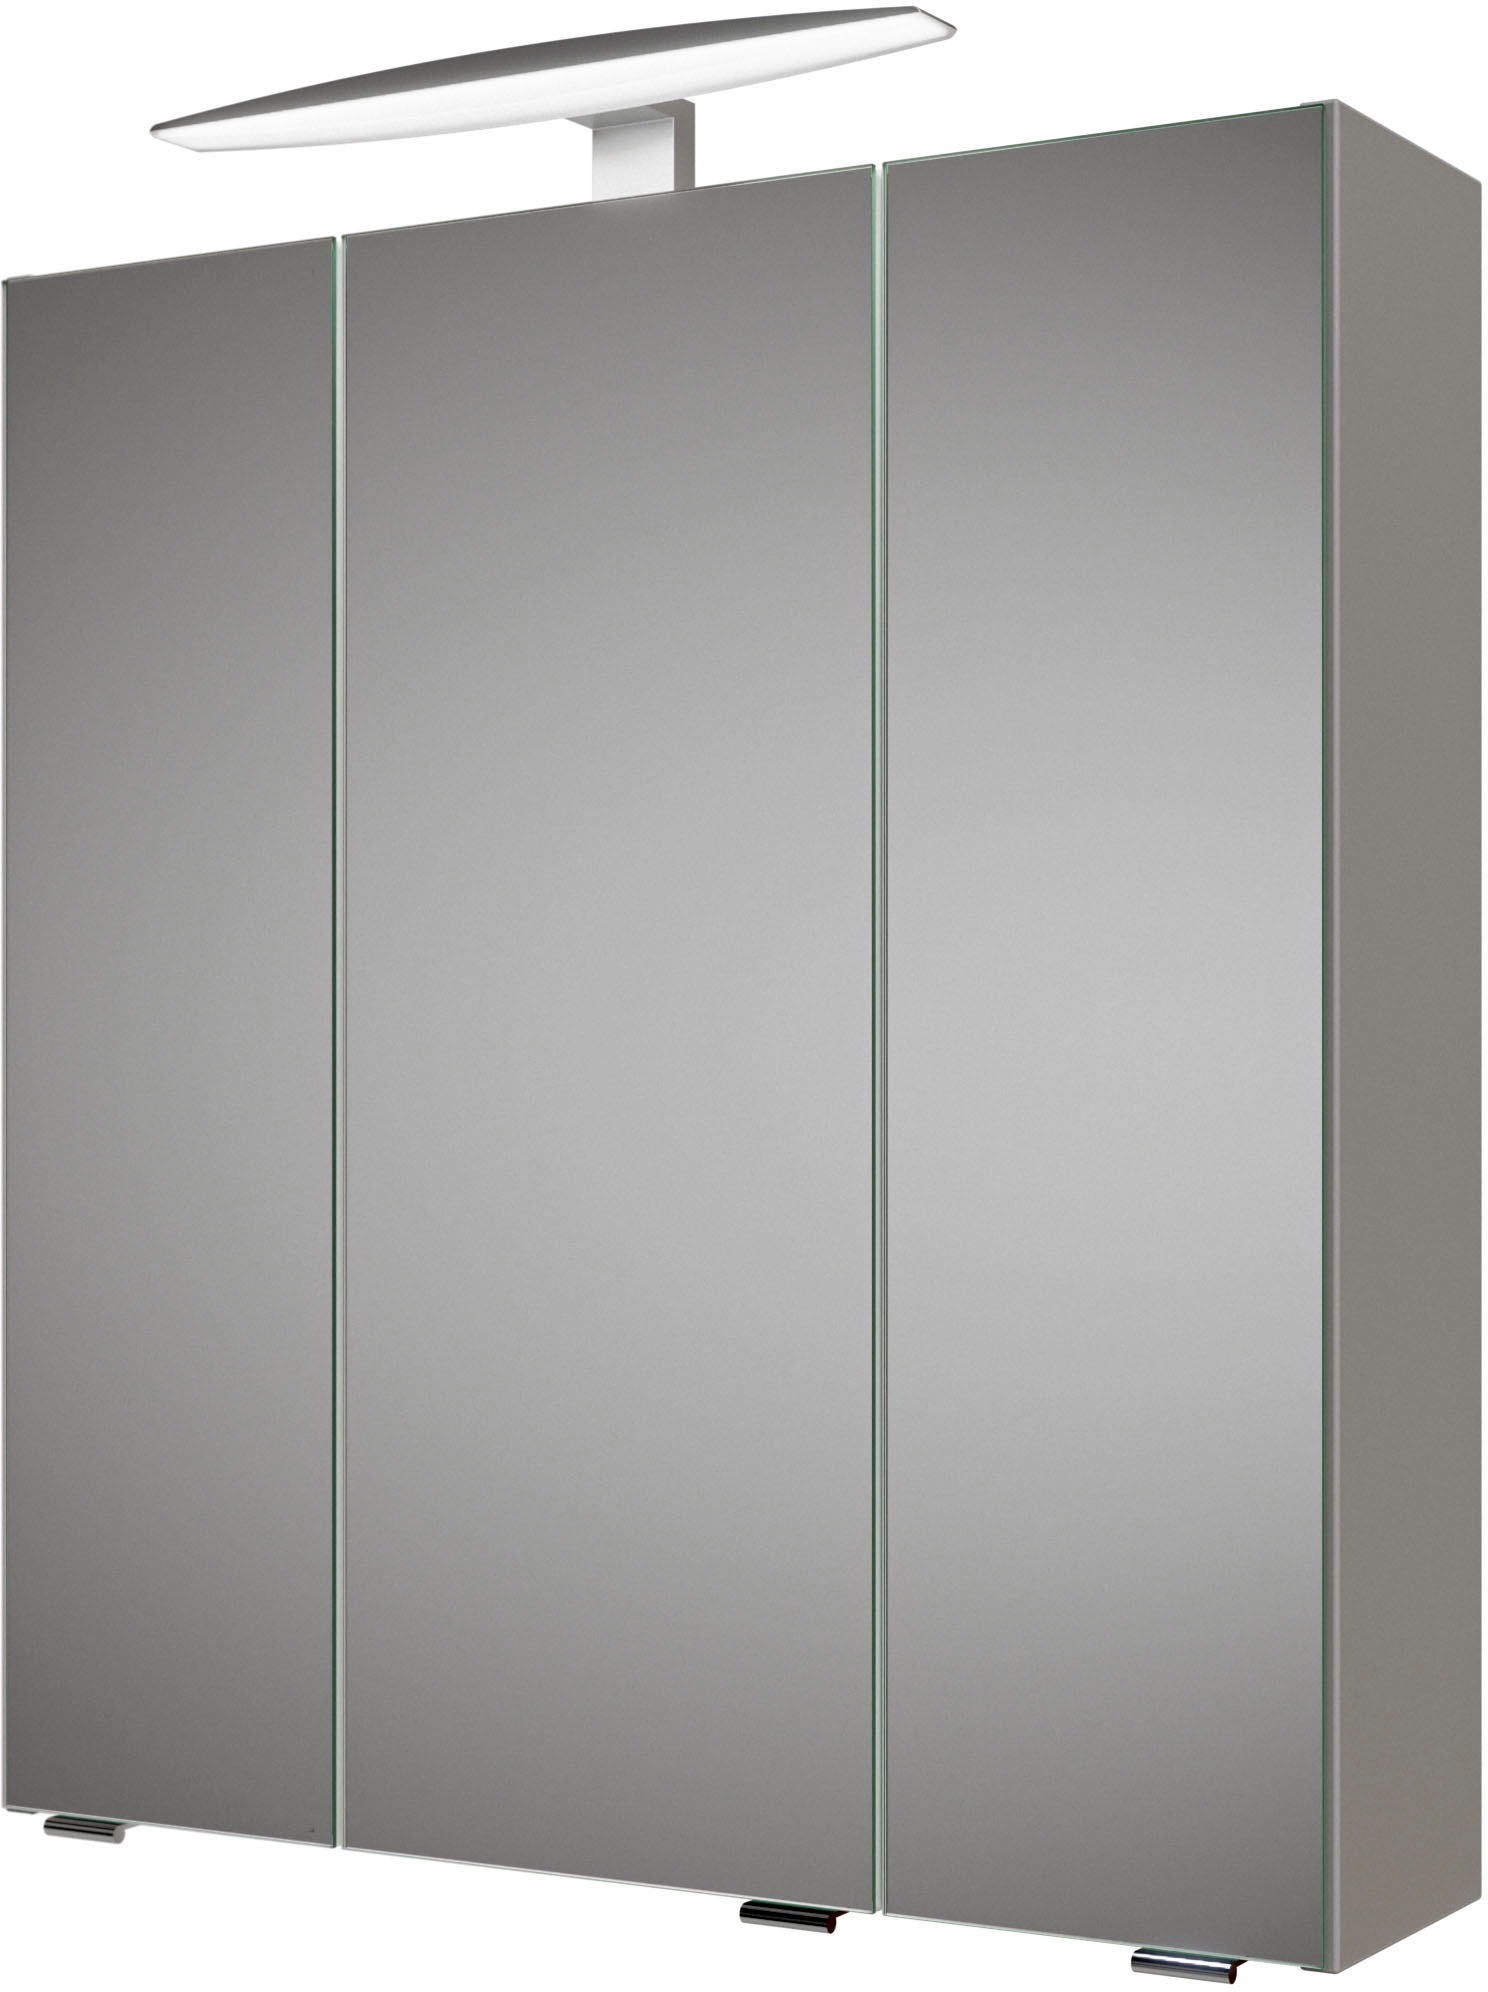 online | kaufen »Quickset PELIPAL UNIVERSAL Badezimmerspiegelschrank 937«